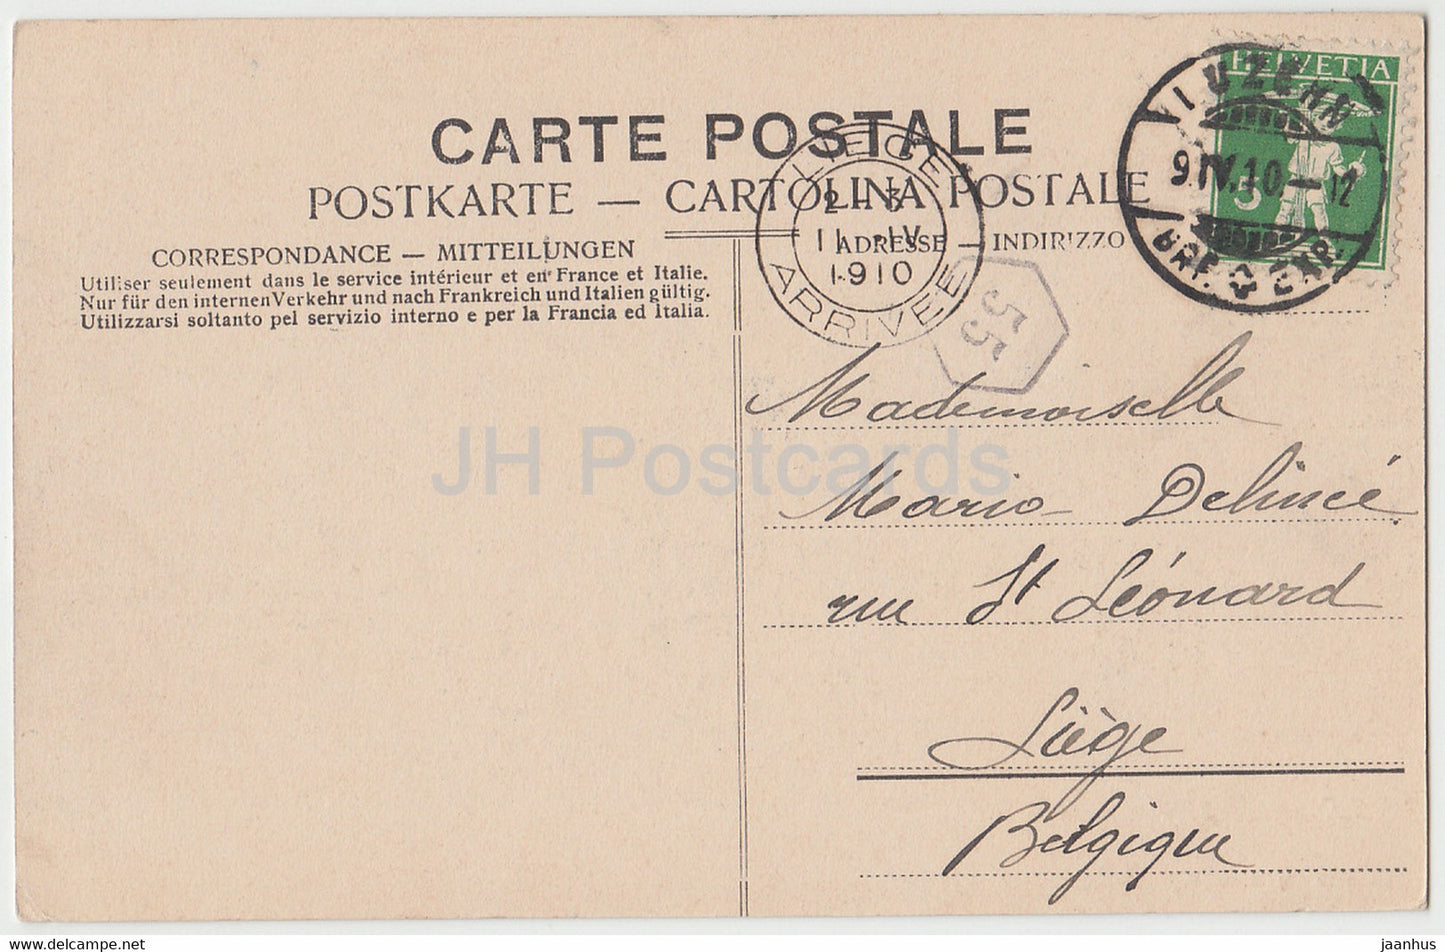 Luzern - Lucerne - Schweizerhofquai - bateau à vapeur - bateau - carte postale ancienne - 1910 - Suisse - utilisé